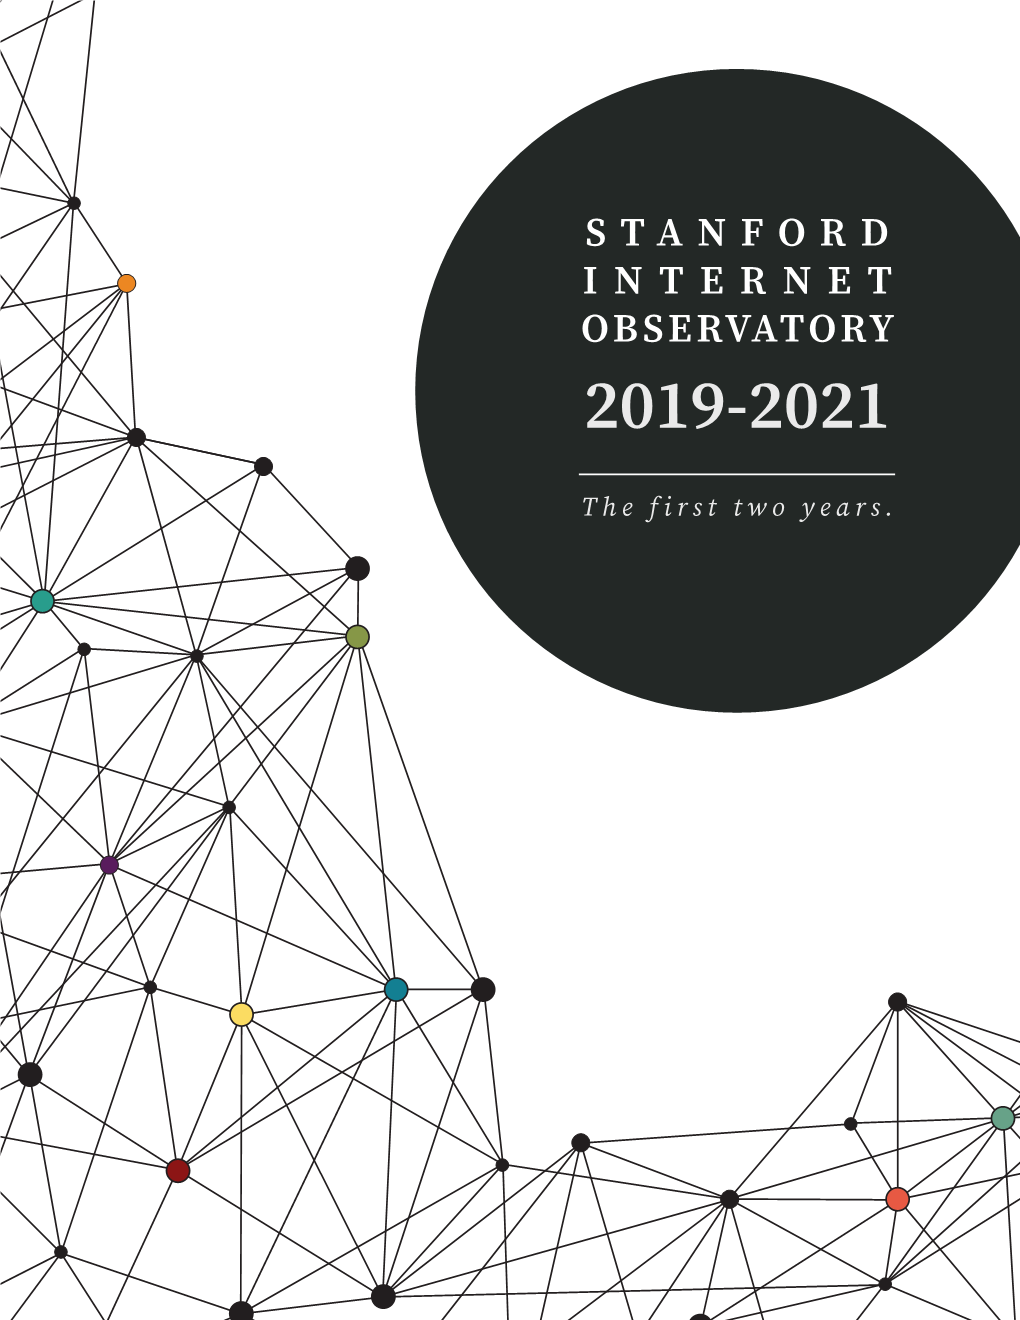 Stanford Internet Observatory 2019-2021